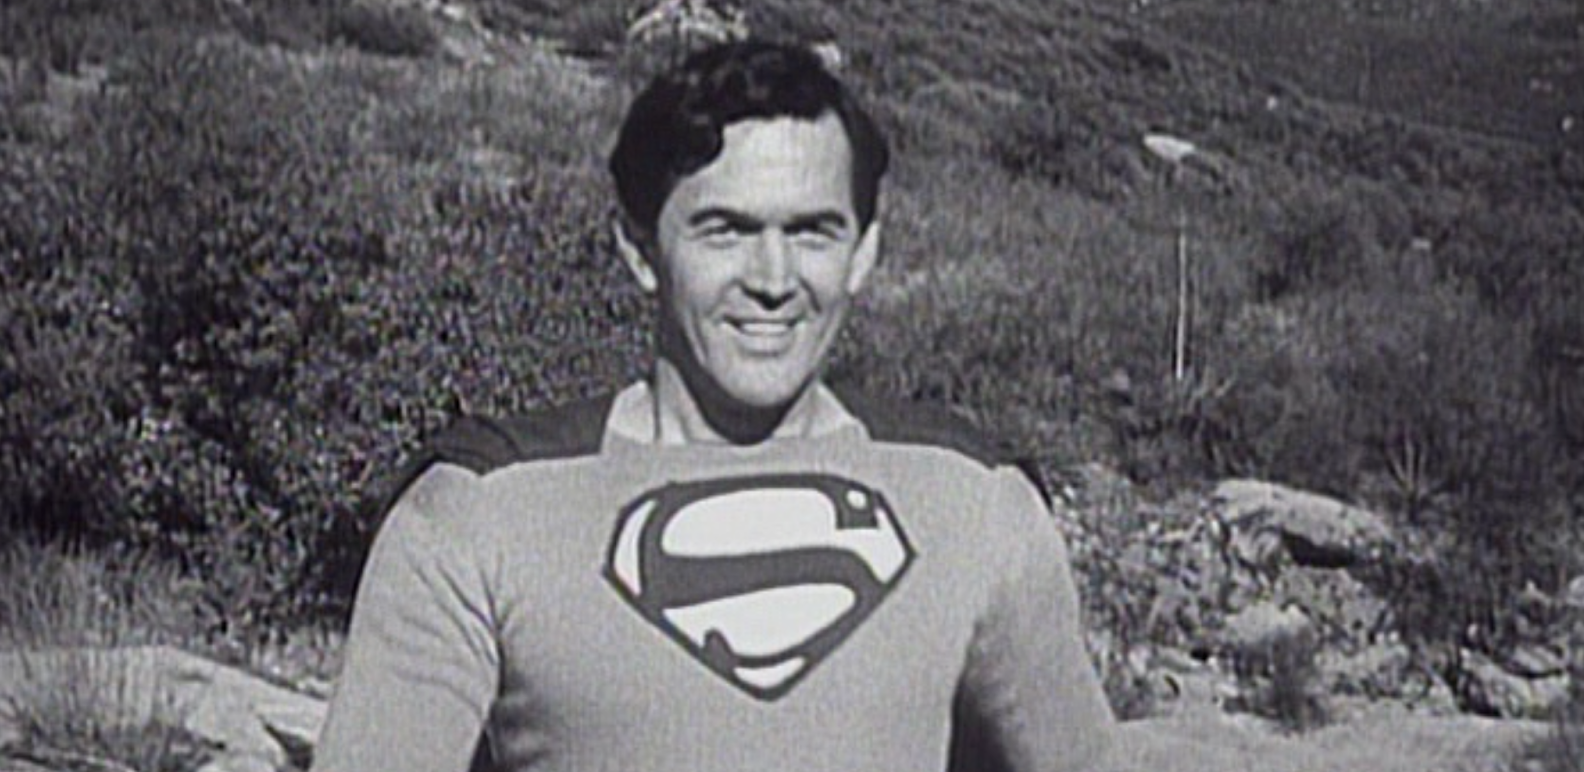 Superman: O Filme será exibido nos cinemas dos EUA - NerdBunker